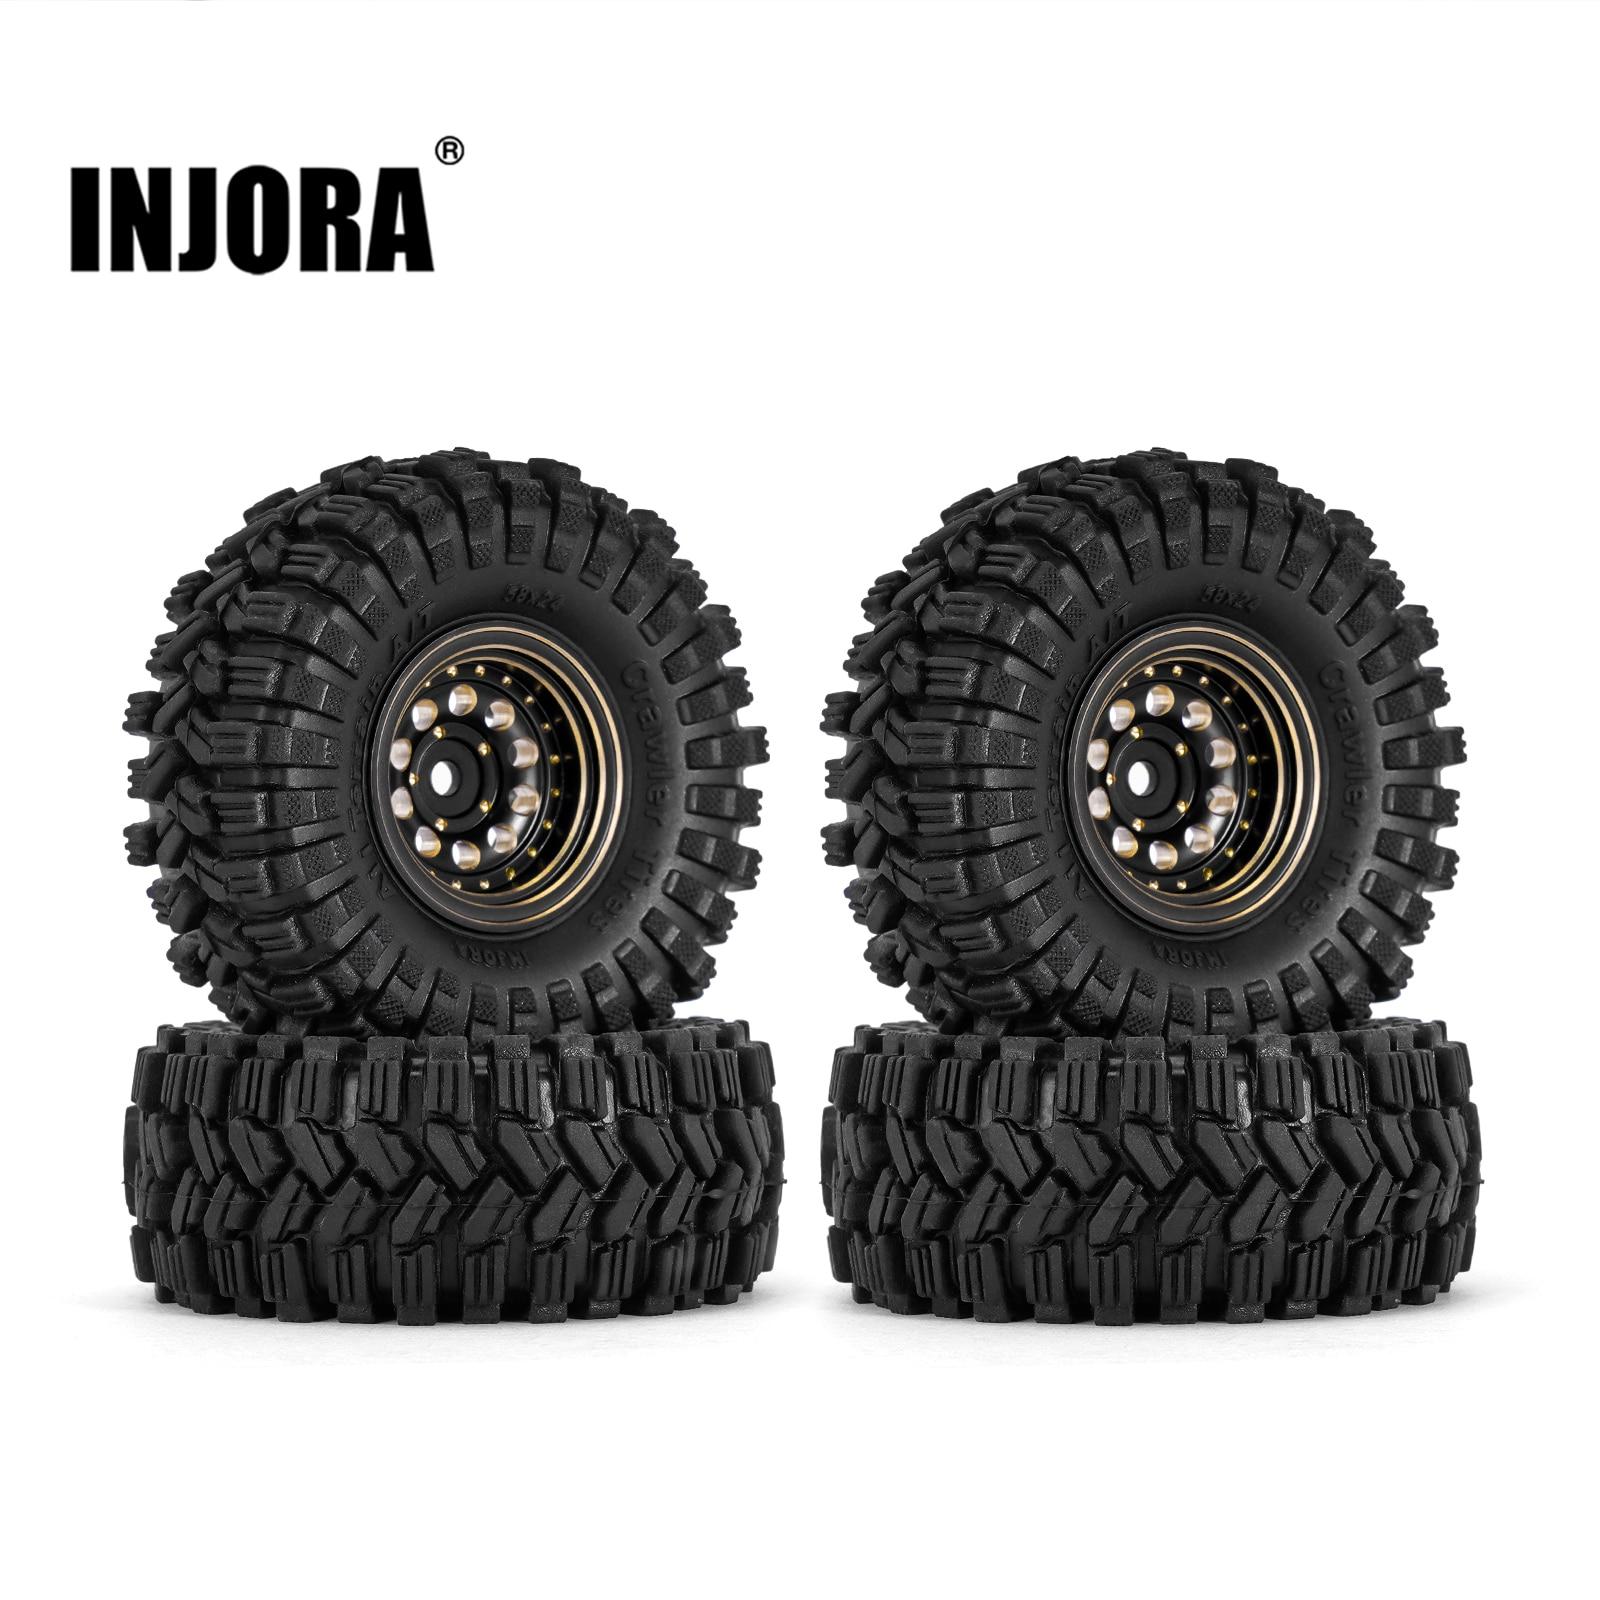 INJORA-Black-Coating-Brass-1-0-Beadlock-Wheel-Tires-Set-for-1-24-1-18-RC.jpg